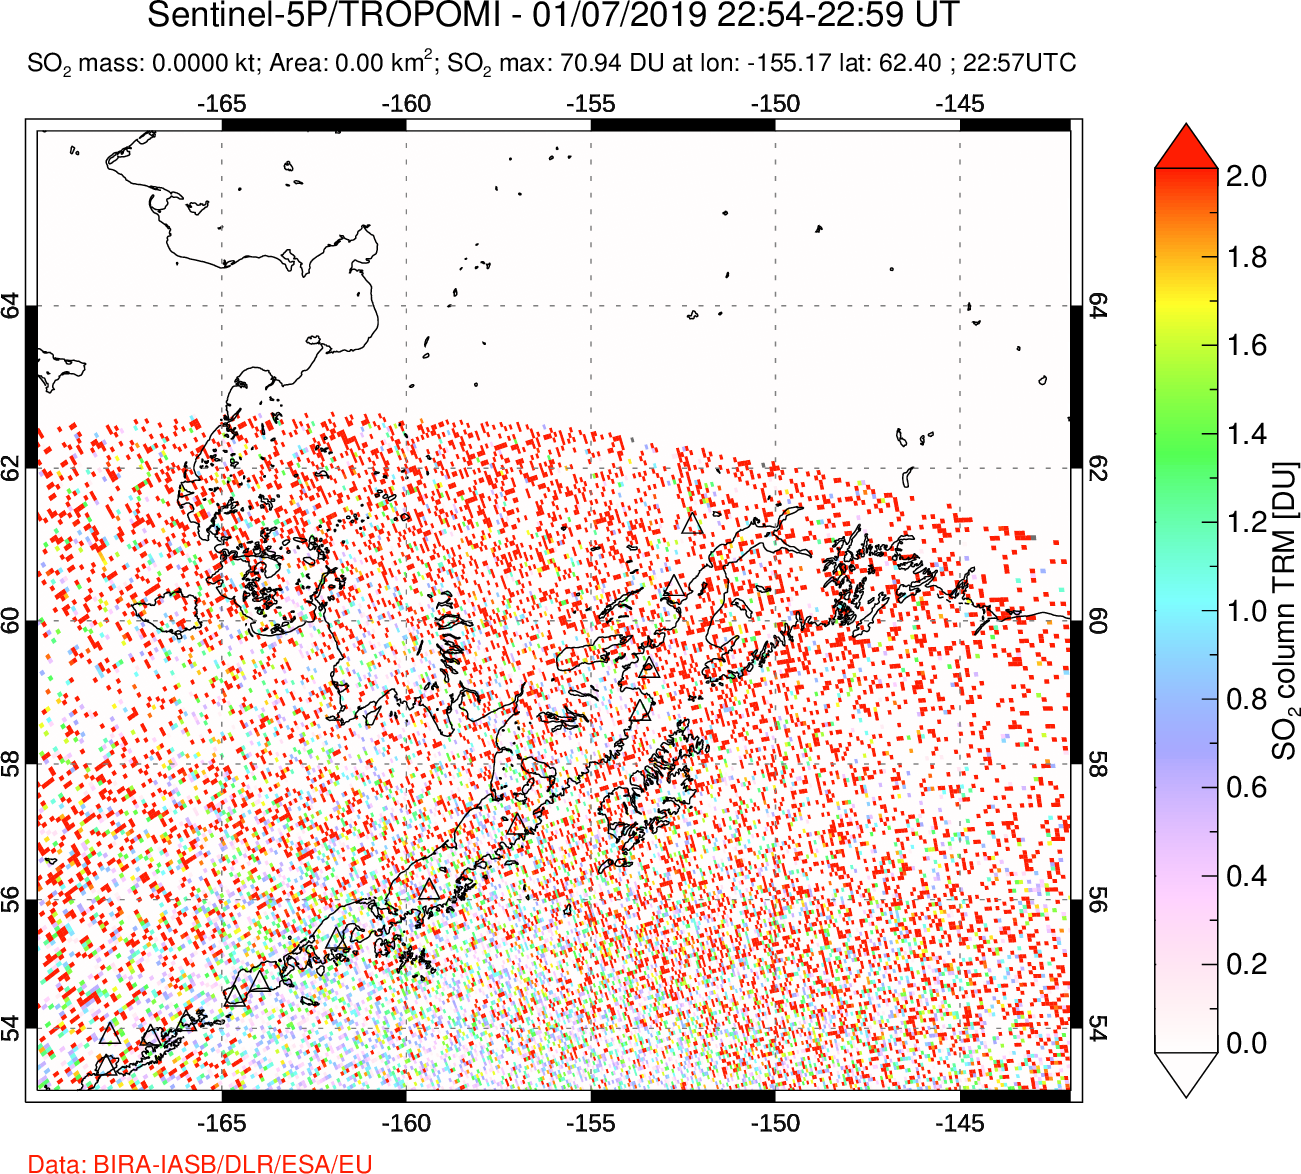 A sulfur dioxide image over Alaska, USA on Jan 07, 2019.